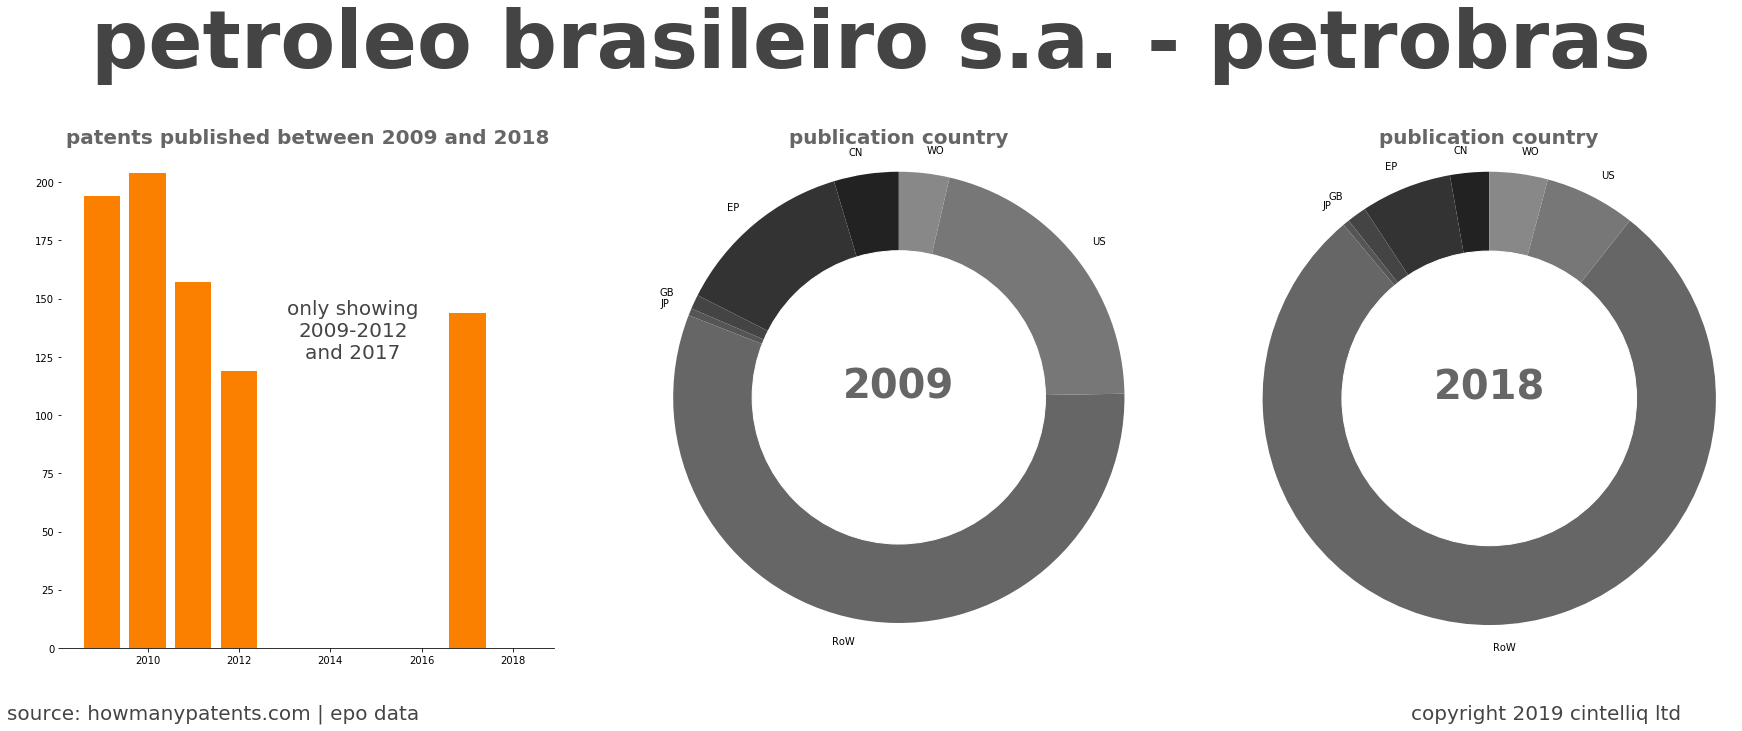 summary of patents for Petroleo Brasileiro S.A. - Petrobras